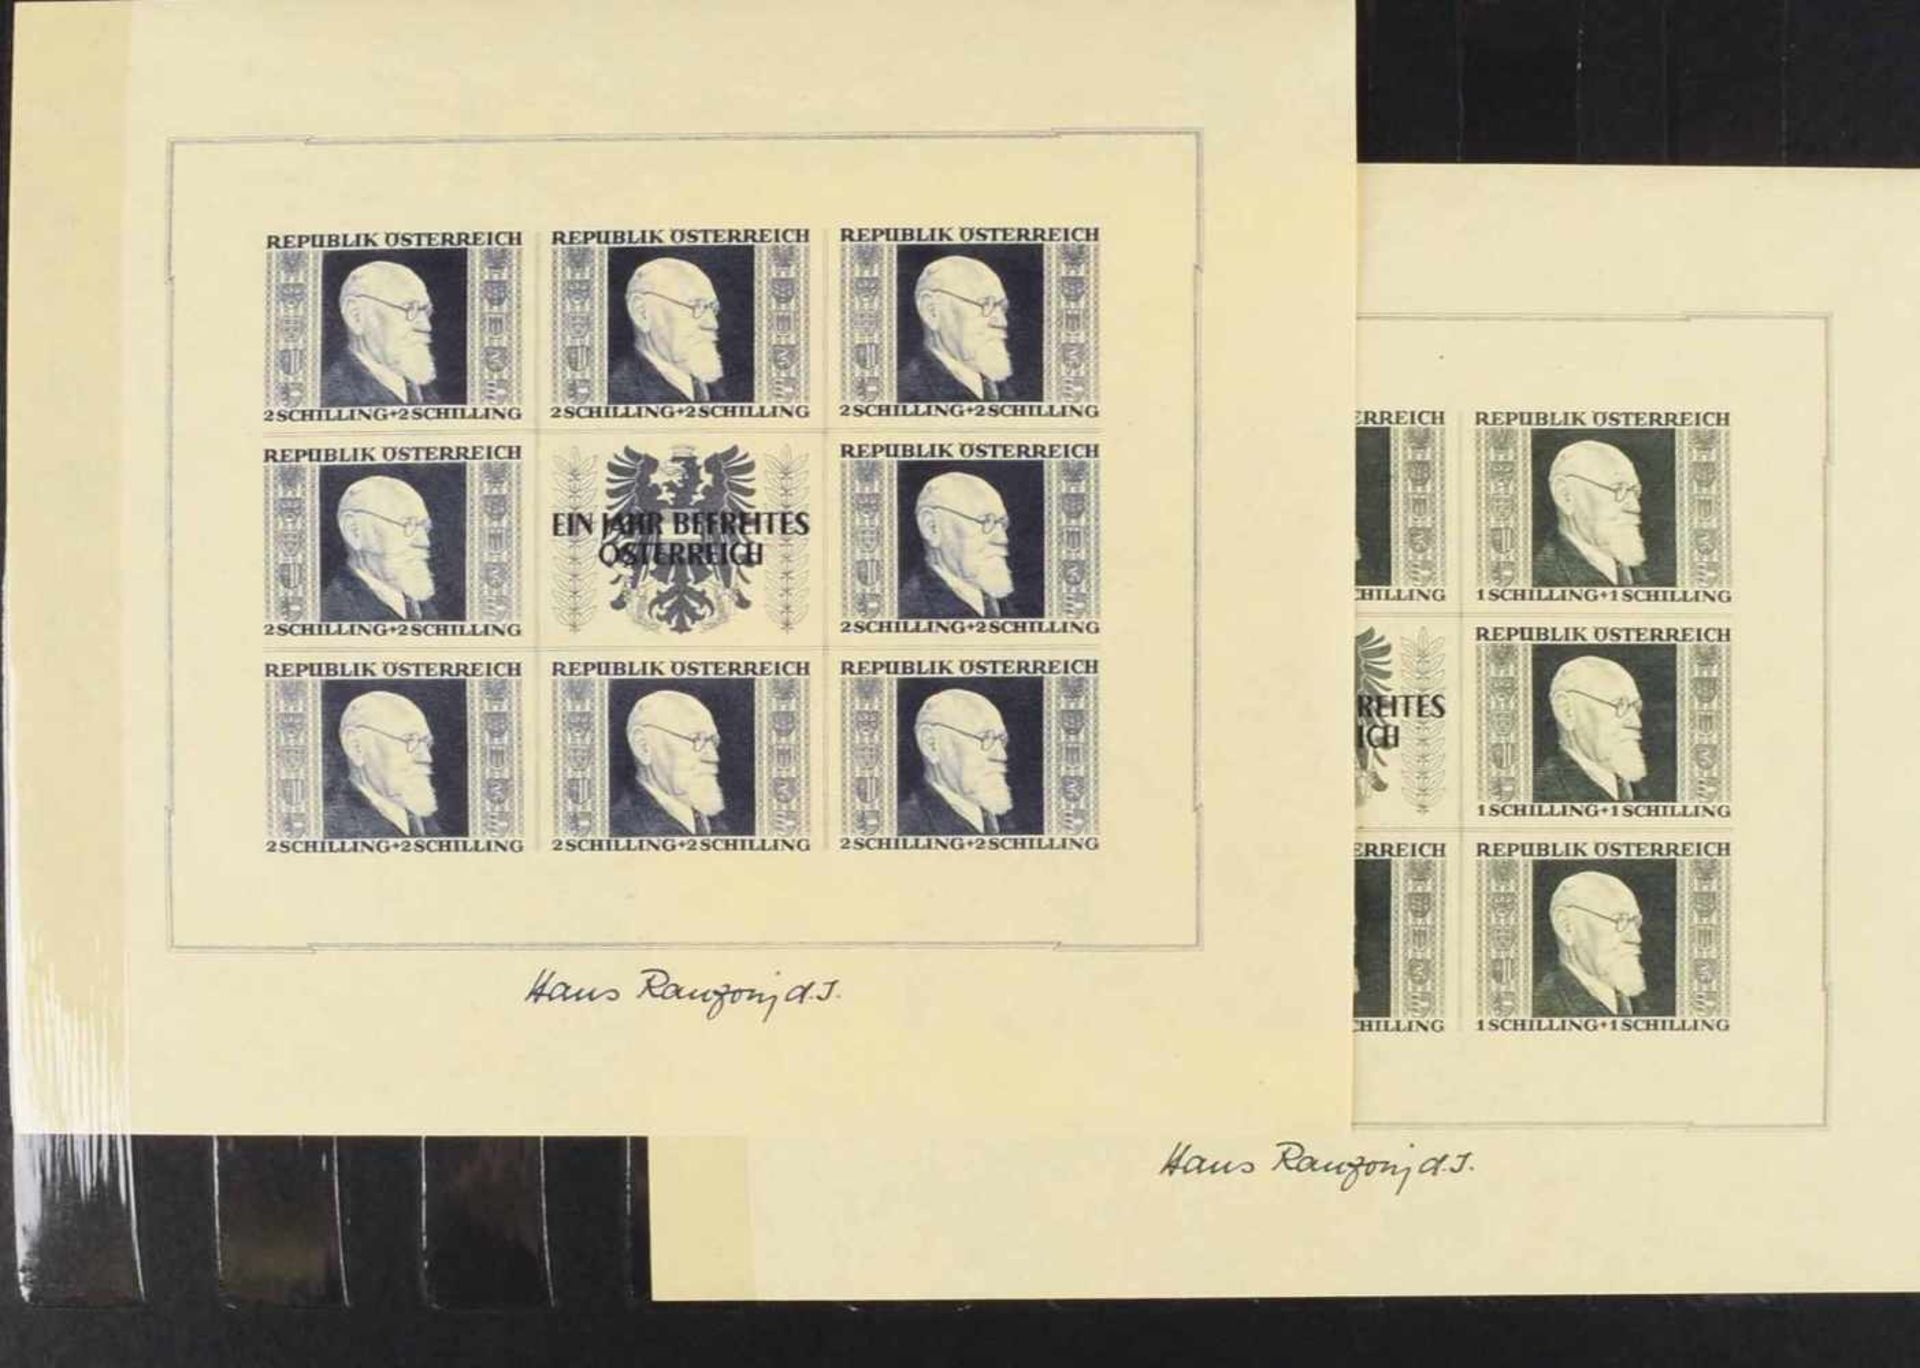 Briefmarken Österreich 1946 postfrisch, insg. alle 4 Blockausgaben, sog. "Renner-Blöcke" (Kleinbogen - Image 4 of 4